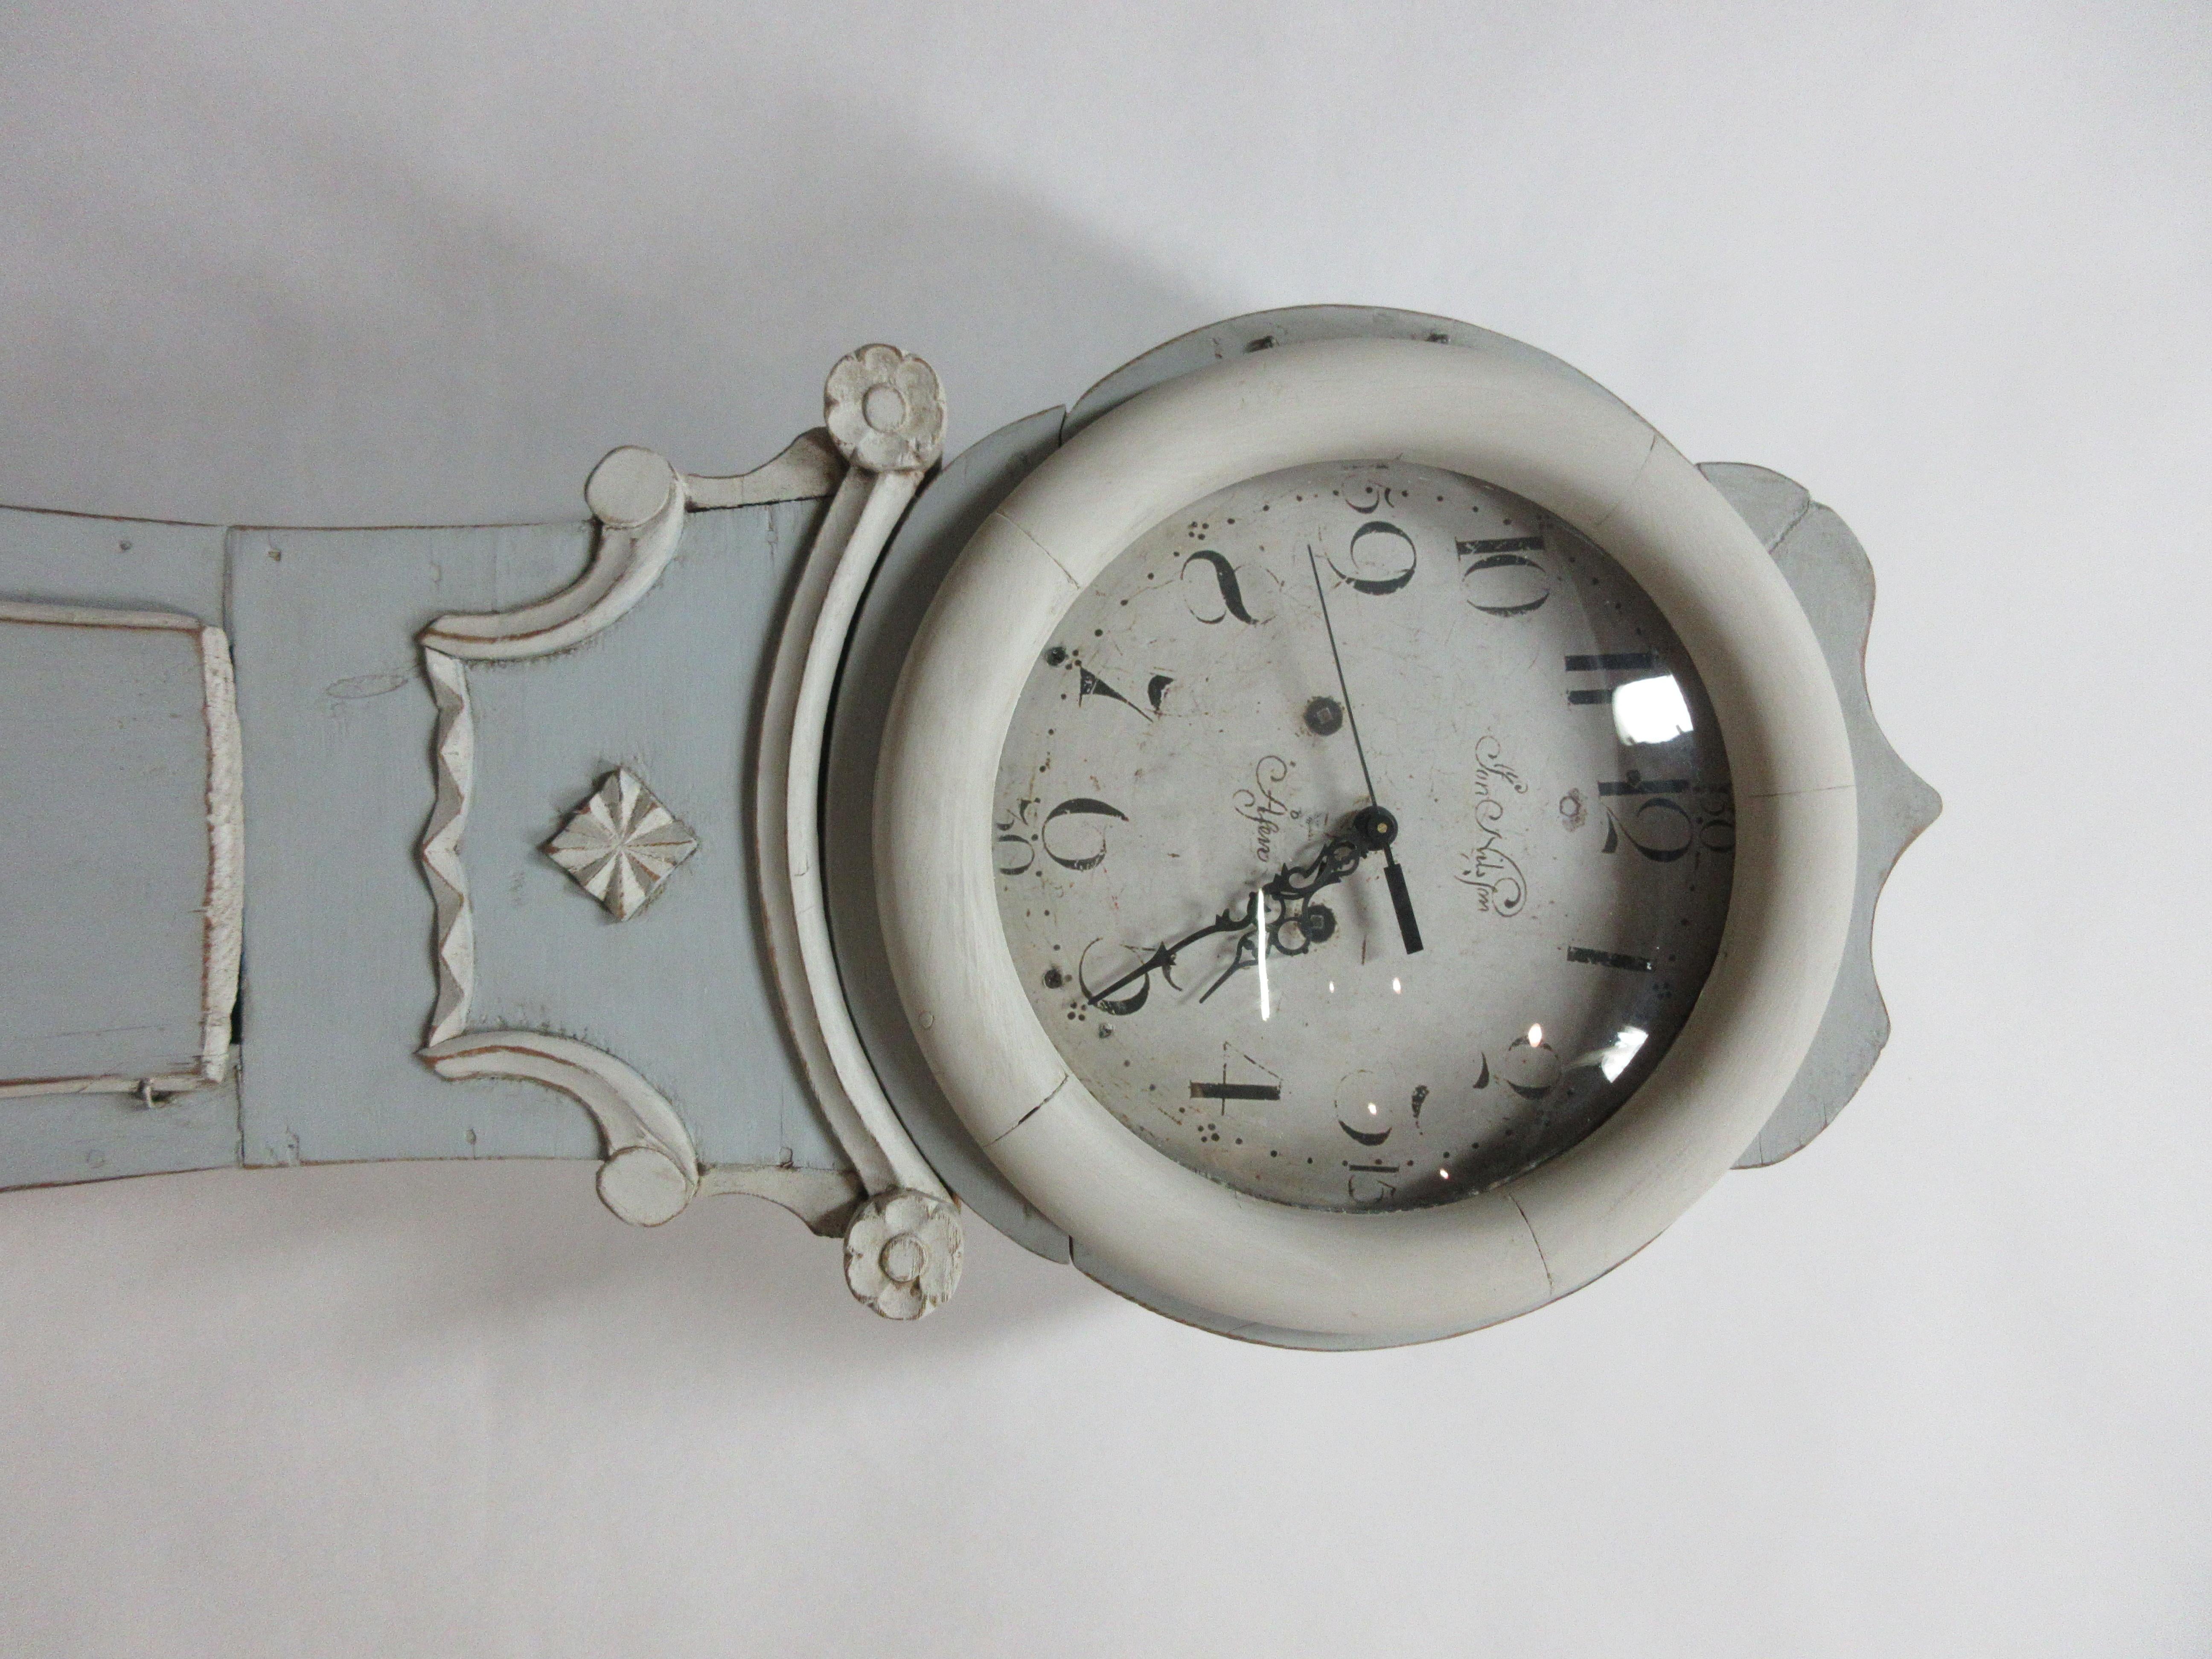 Il s'agit d'une horloge mora suédoise peinte. J'ai installé des piles neuves. Les piles d'origine sont offertes avec cette horloge mais elles ne fonctionnent pas.